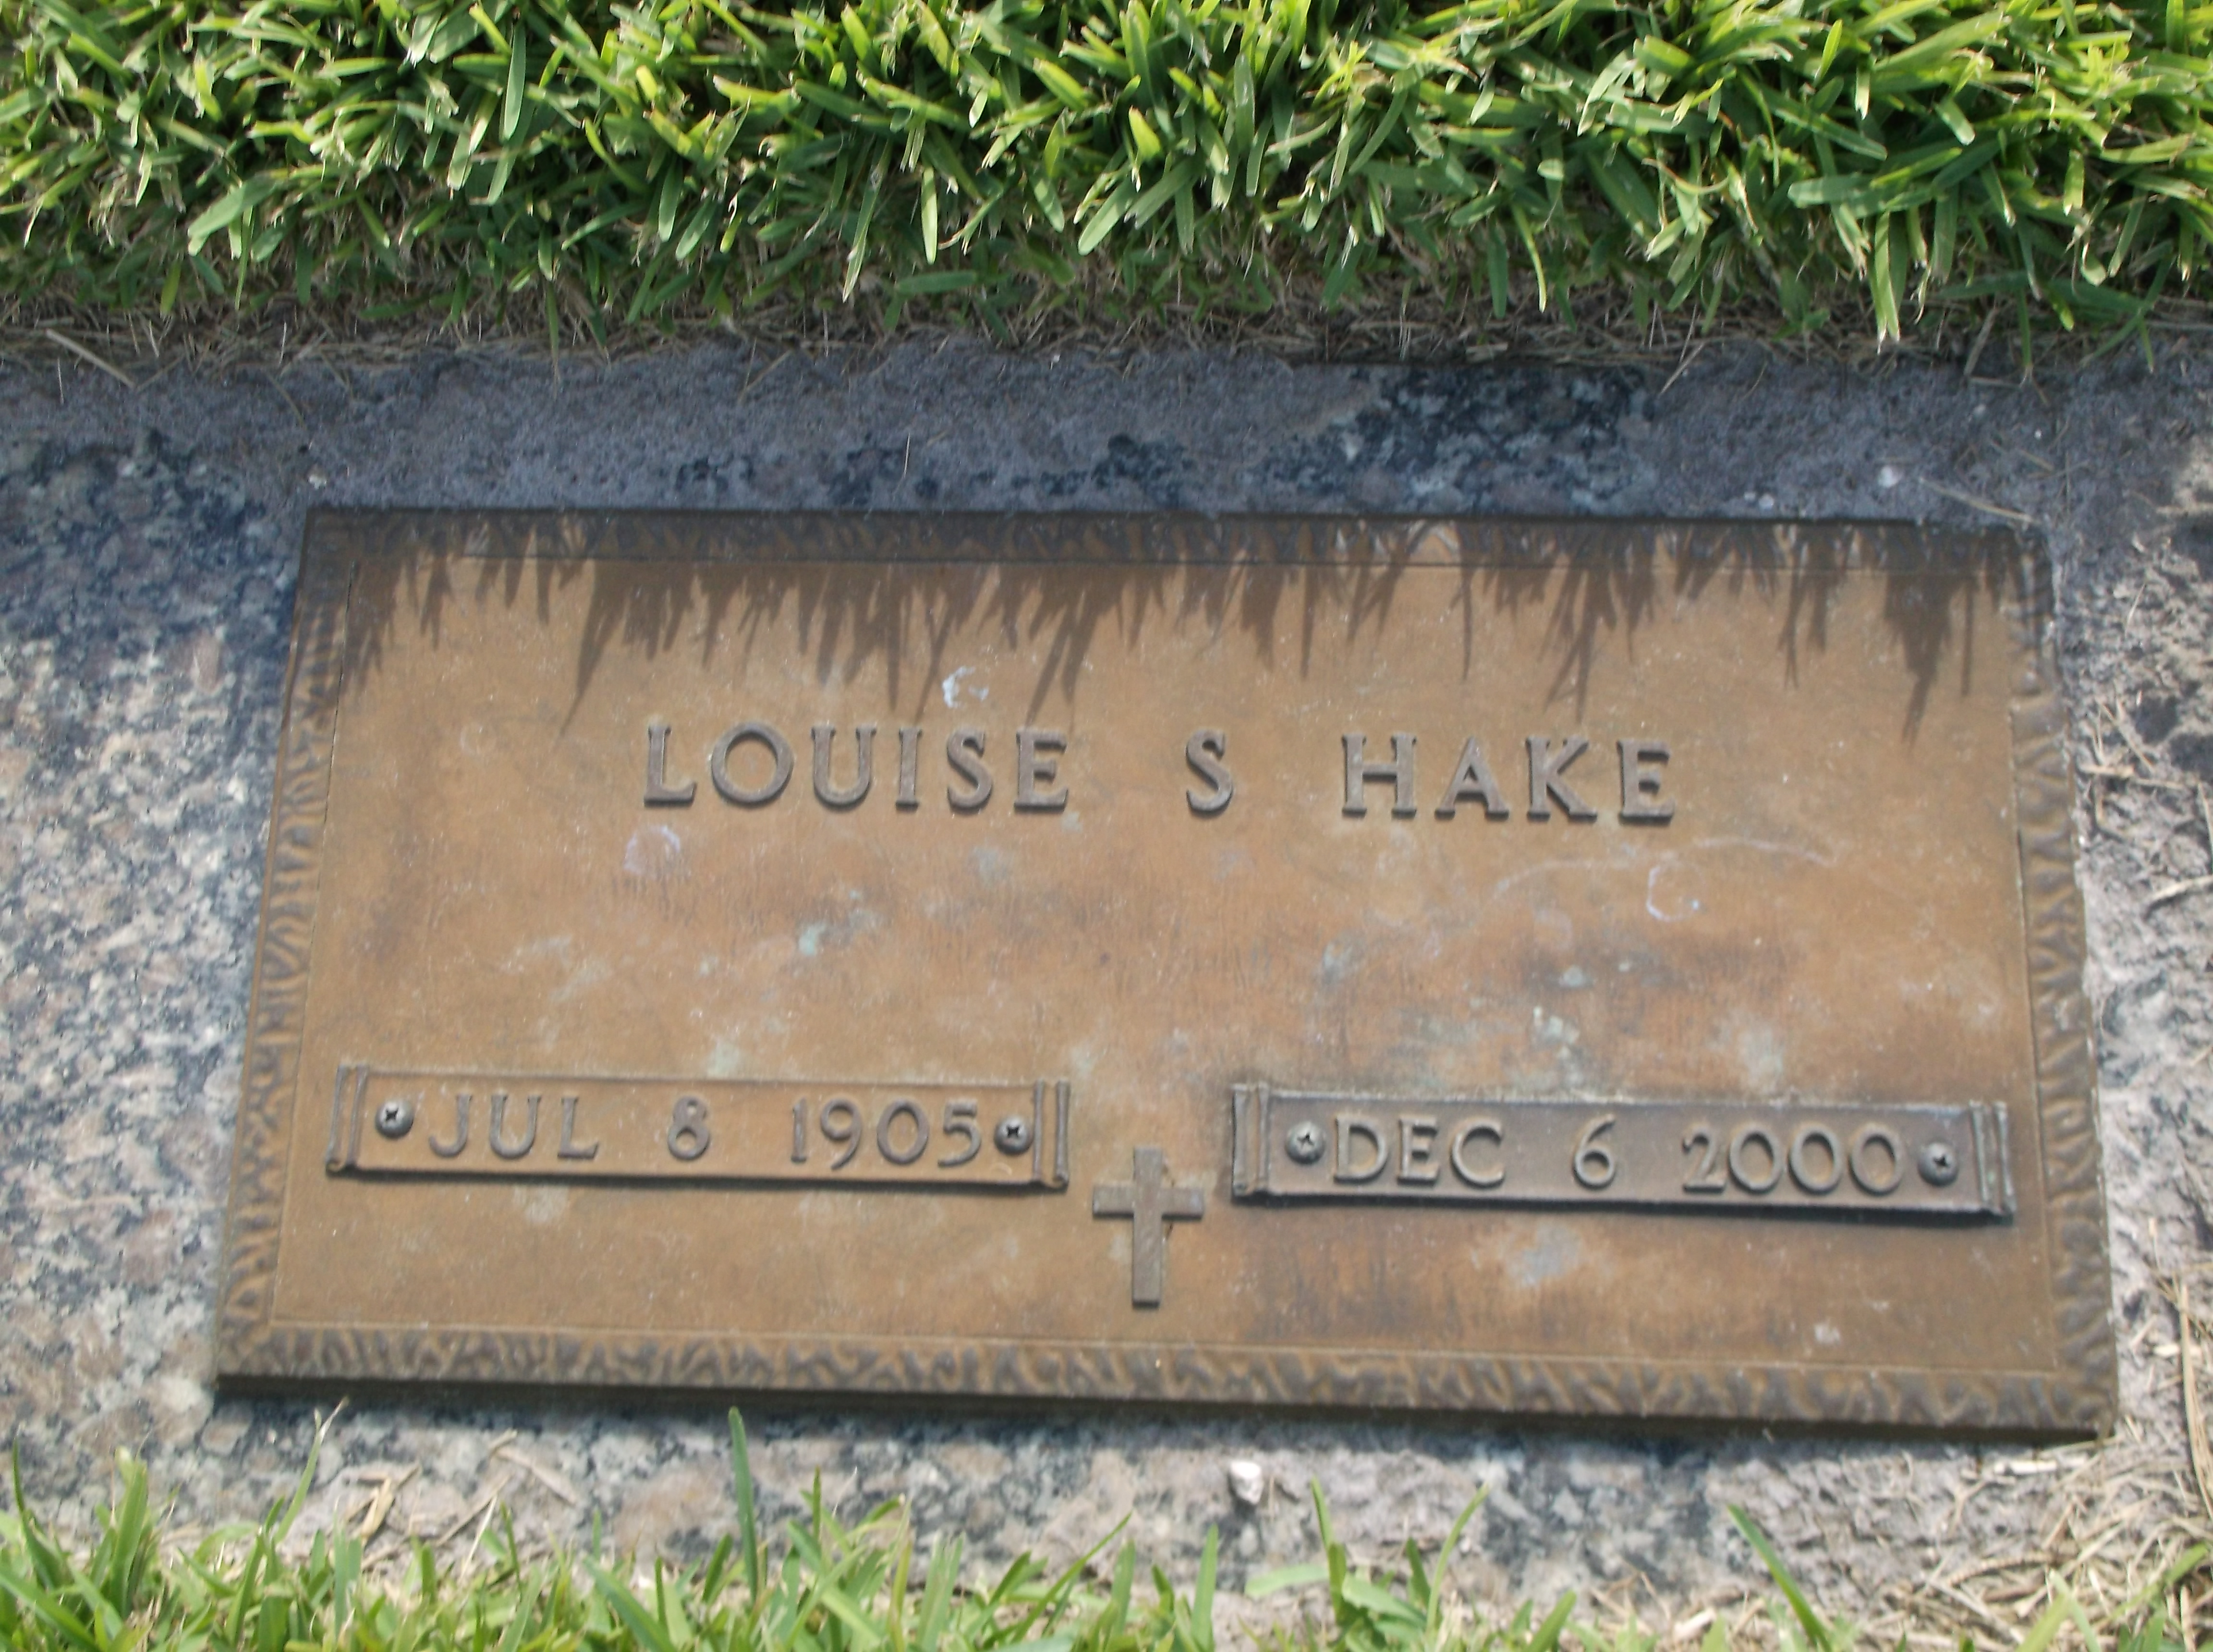 Louise S Hake